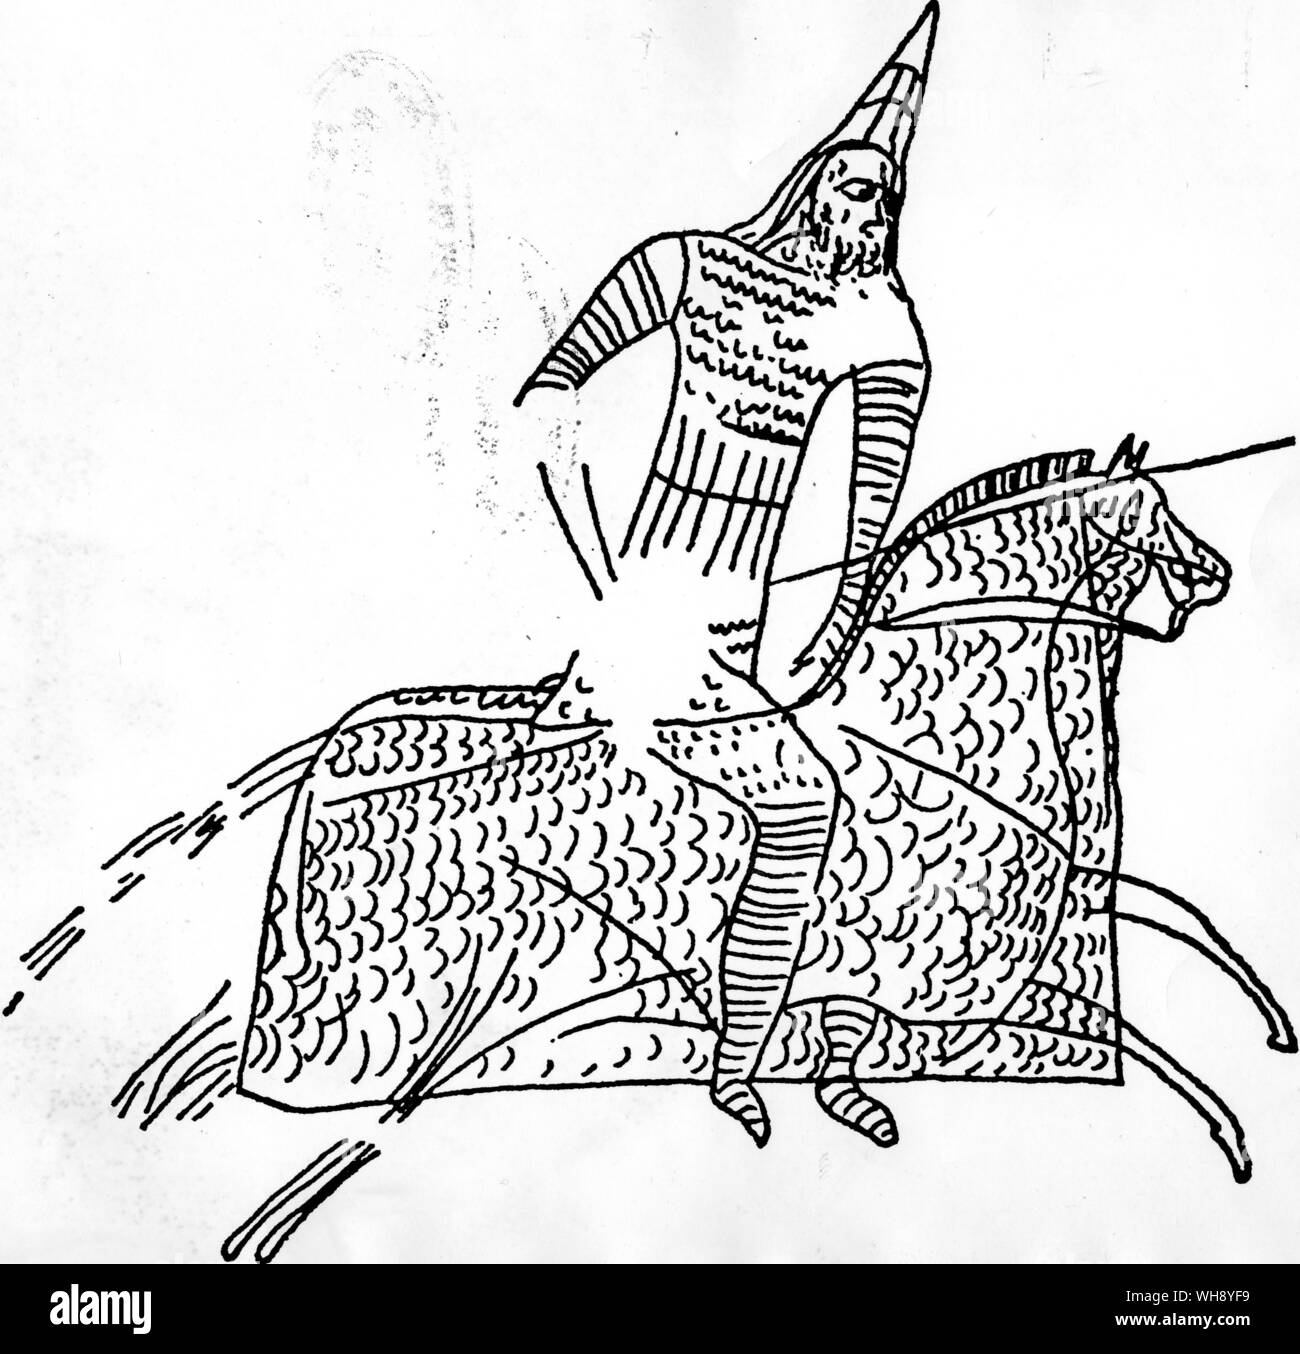 Römische Kettenhemd aus asiatischen Quellen kopiert beide Reiter und Pferd ein graffito des vor dem dritten Jahrhundert N.CHR. zu schützen. Stockfoto